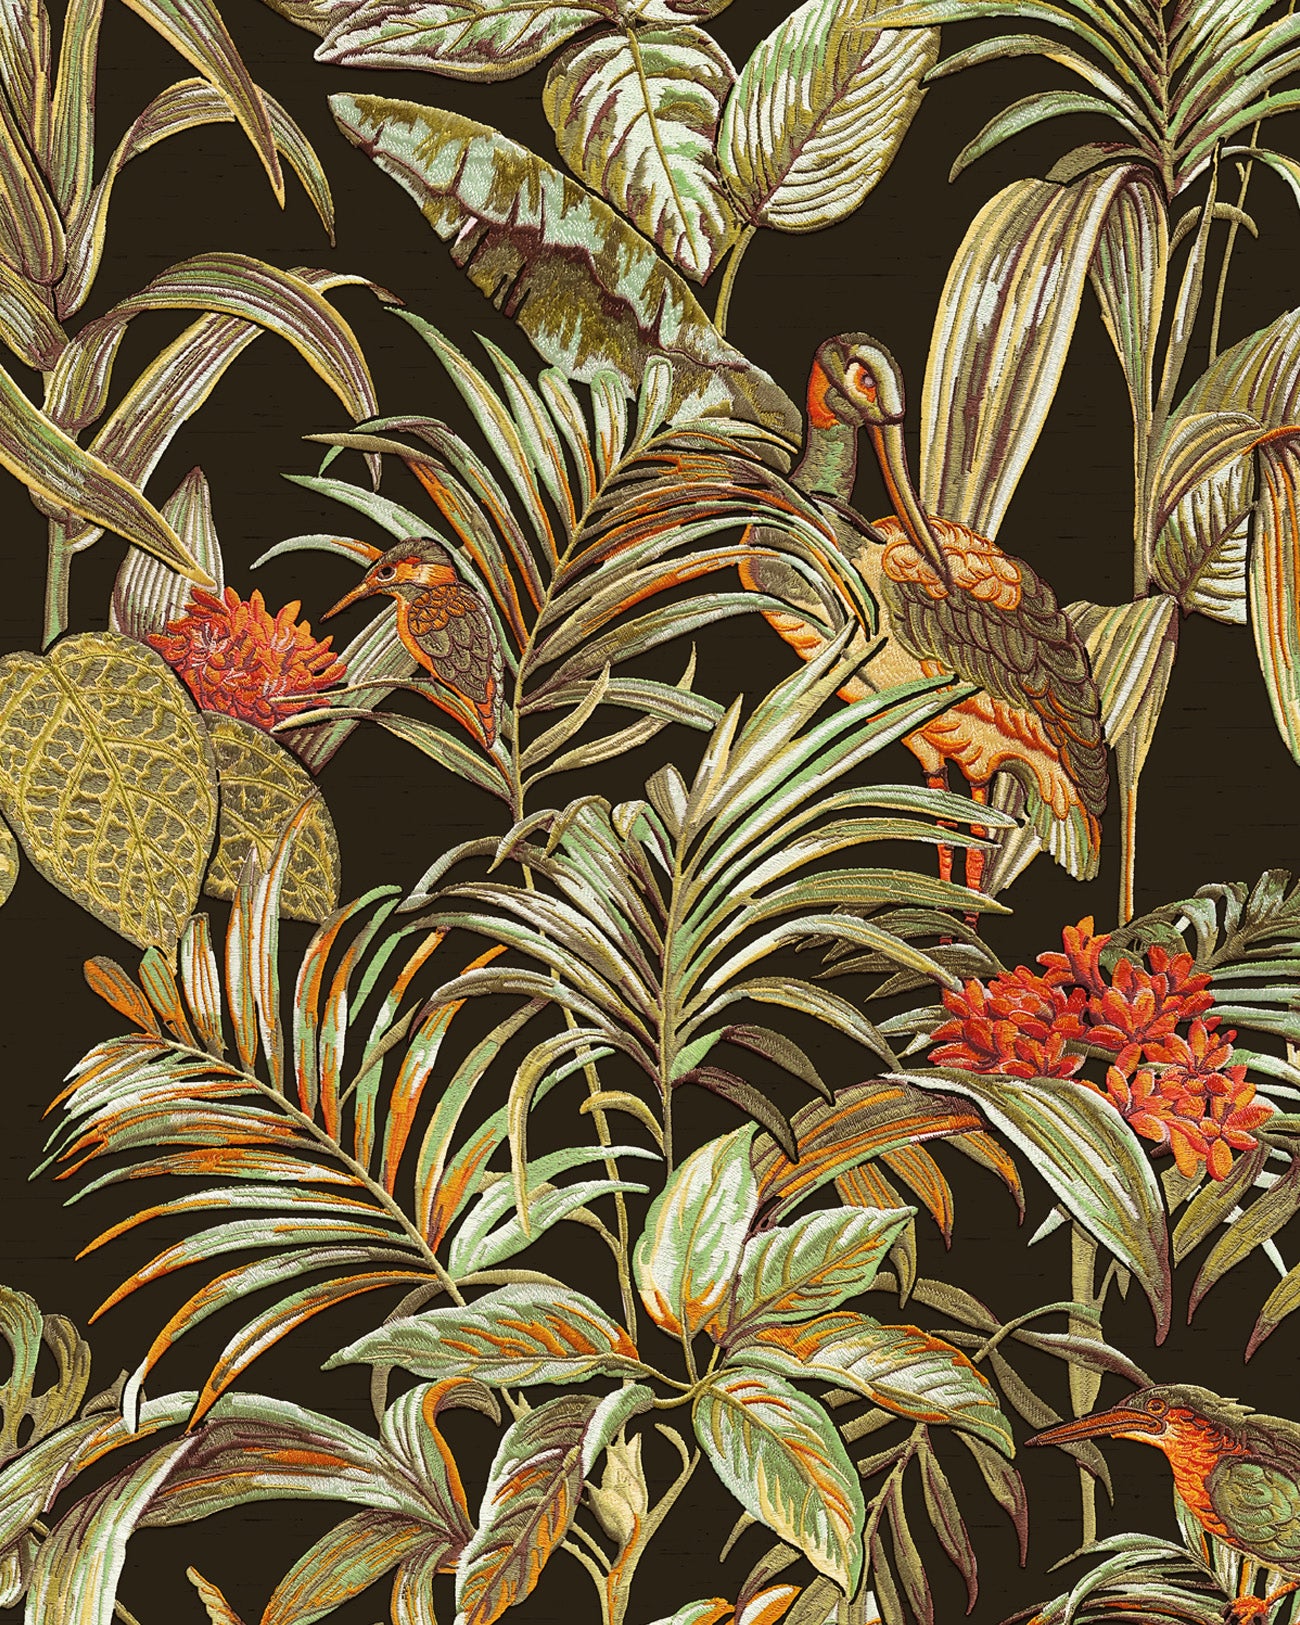 Papier peint moitf d'oiseaux Profhome DE120015-DI papier peint intissé gaufré à chaud gaufré avec un dessin exotique brillant noir vert orange 5,33 m2